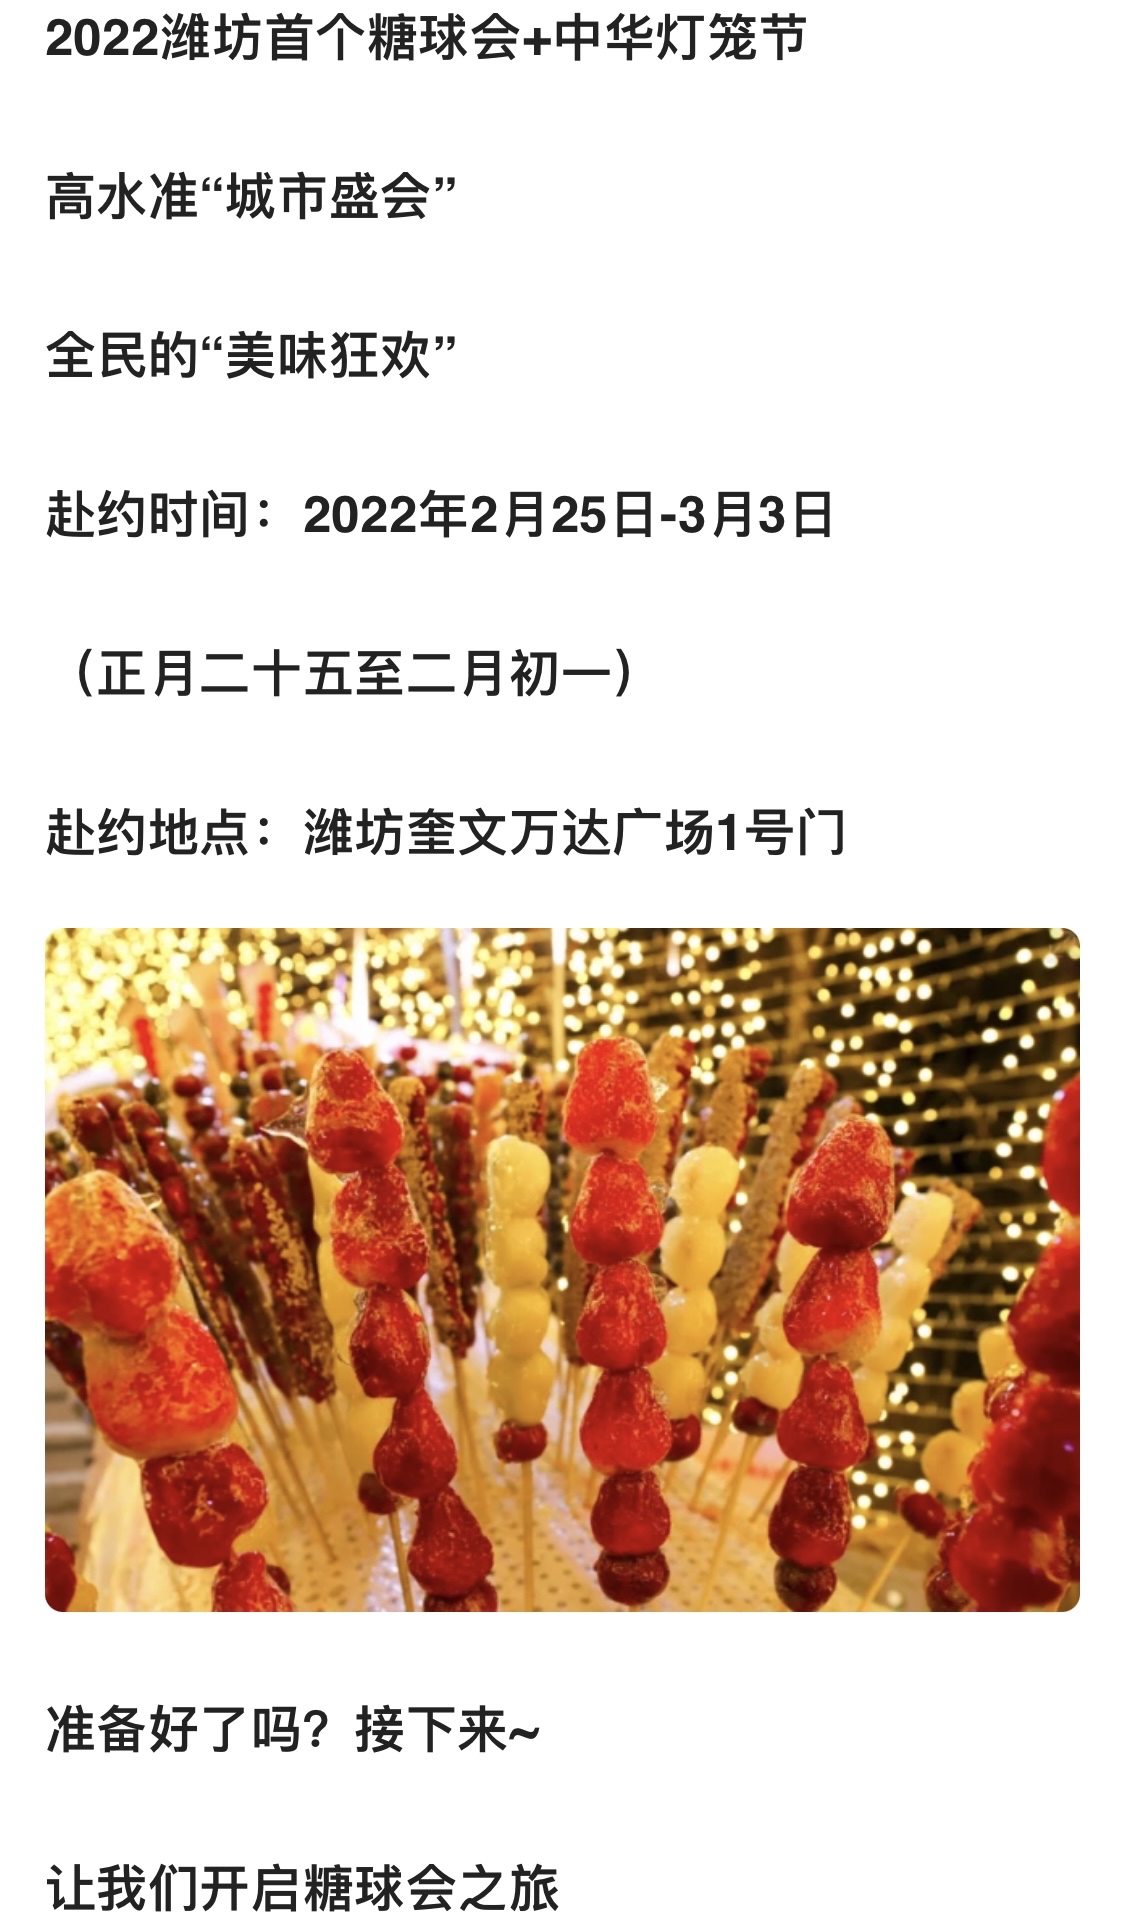 2022潍坊奎文万达广场——大中华美食集市暨糖球会盛大开幕